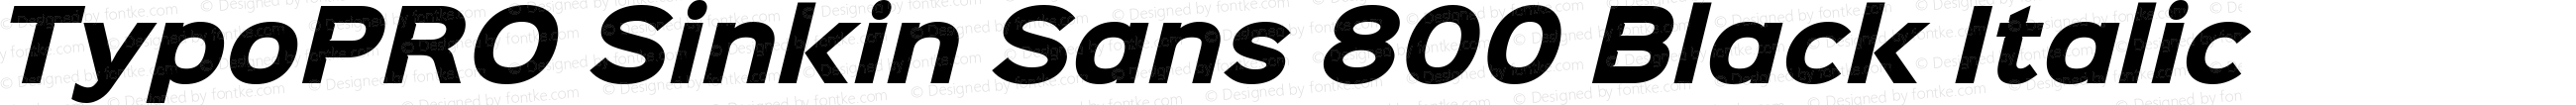 TypoPRO Sinkin Sans 800 Black Italic